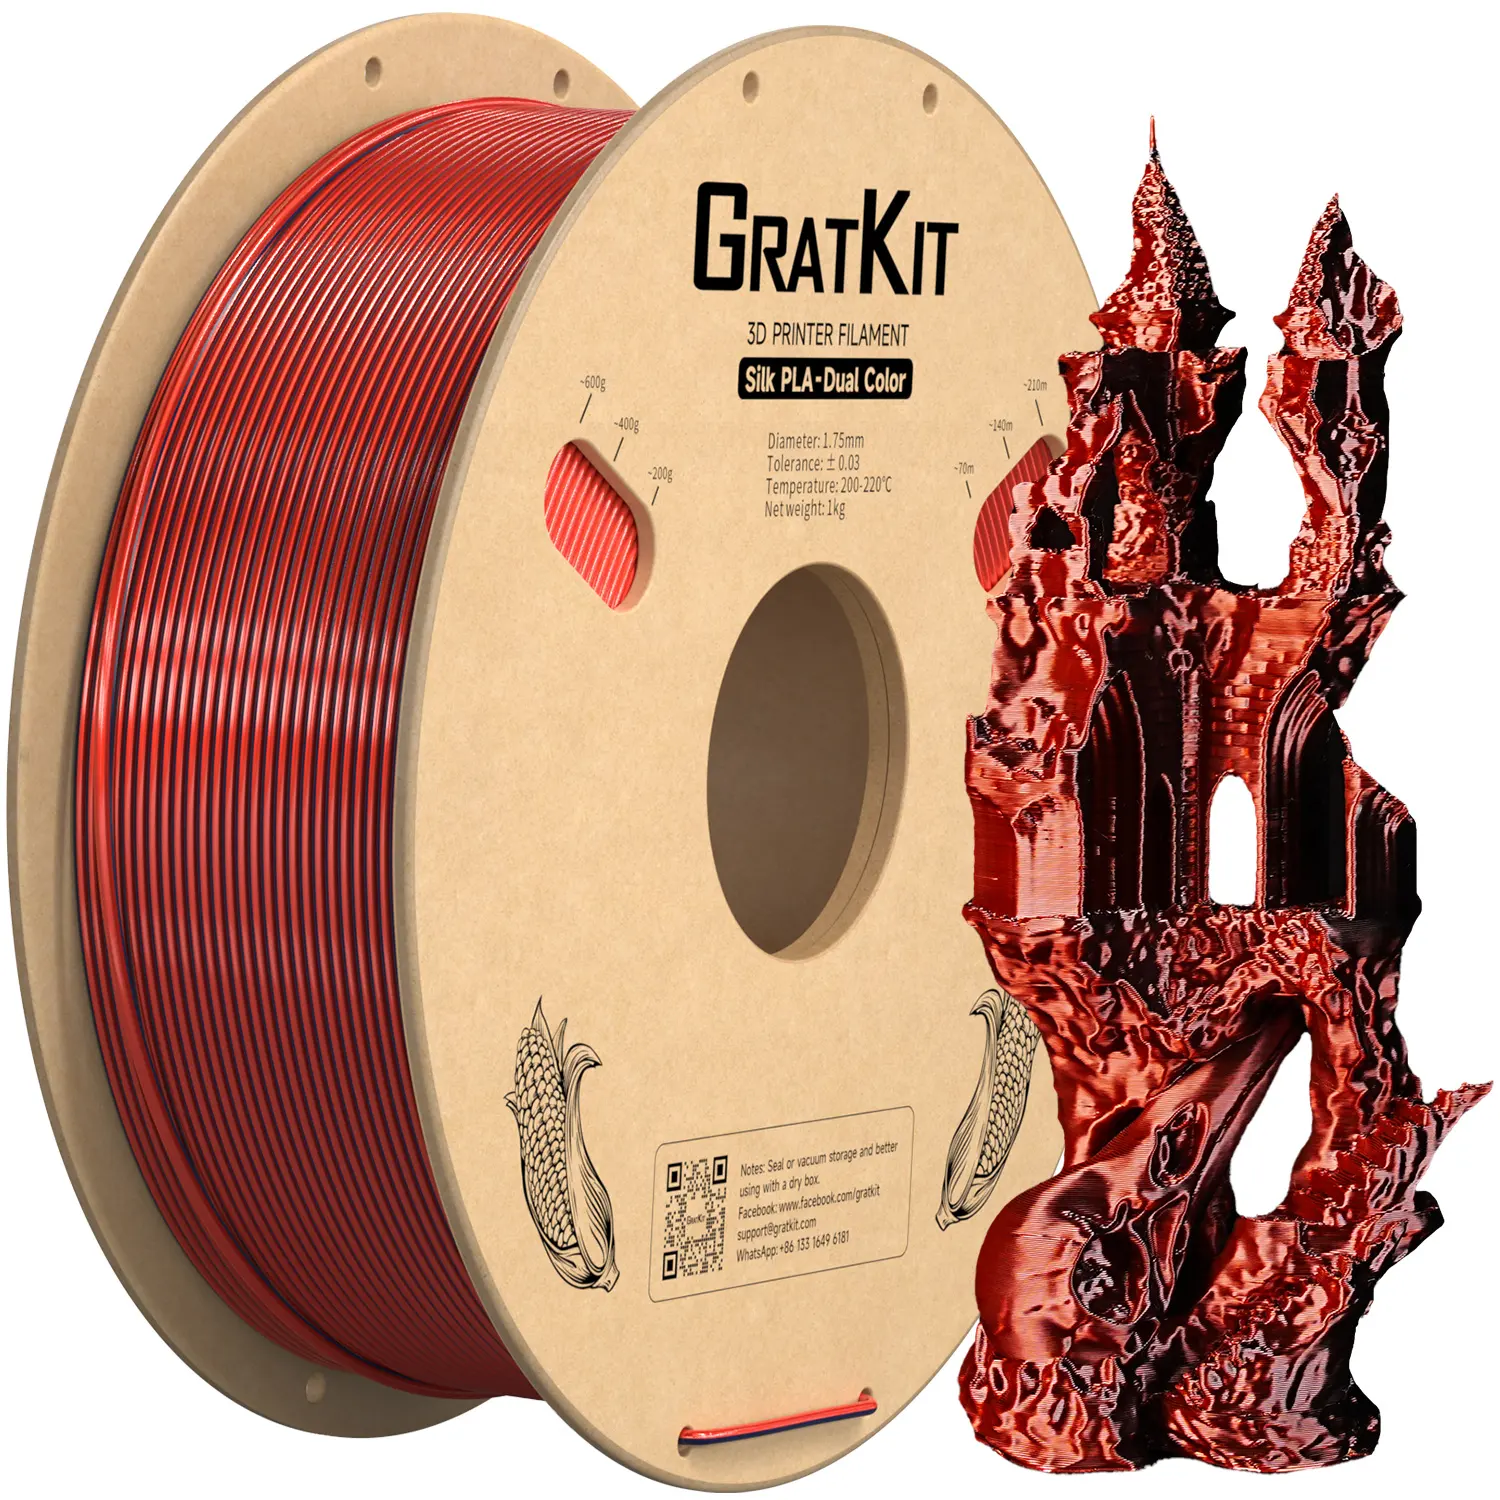 Gratkit – filament PLA bicolore en soie, 2 couleurs en 1 rouleau, 1.75mm pour imprimante 3D